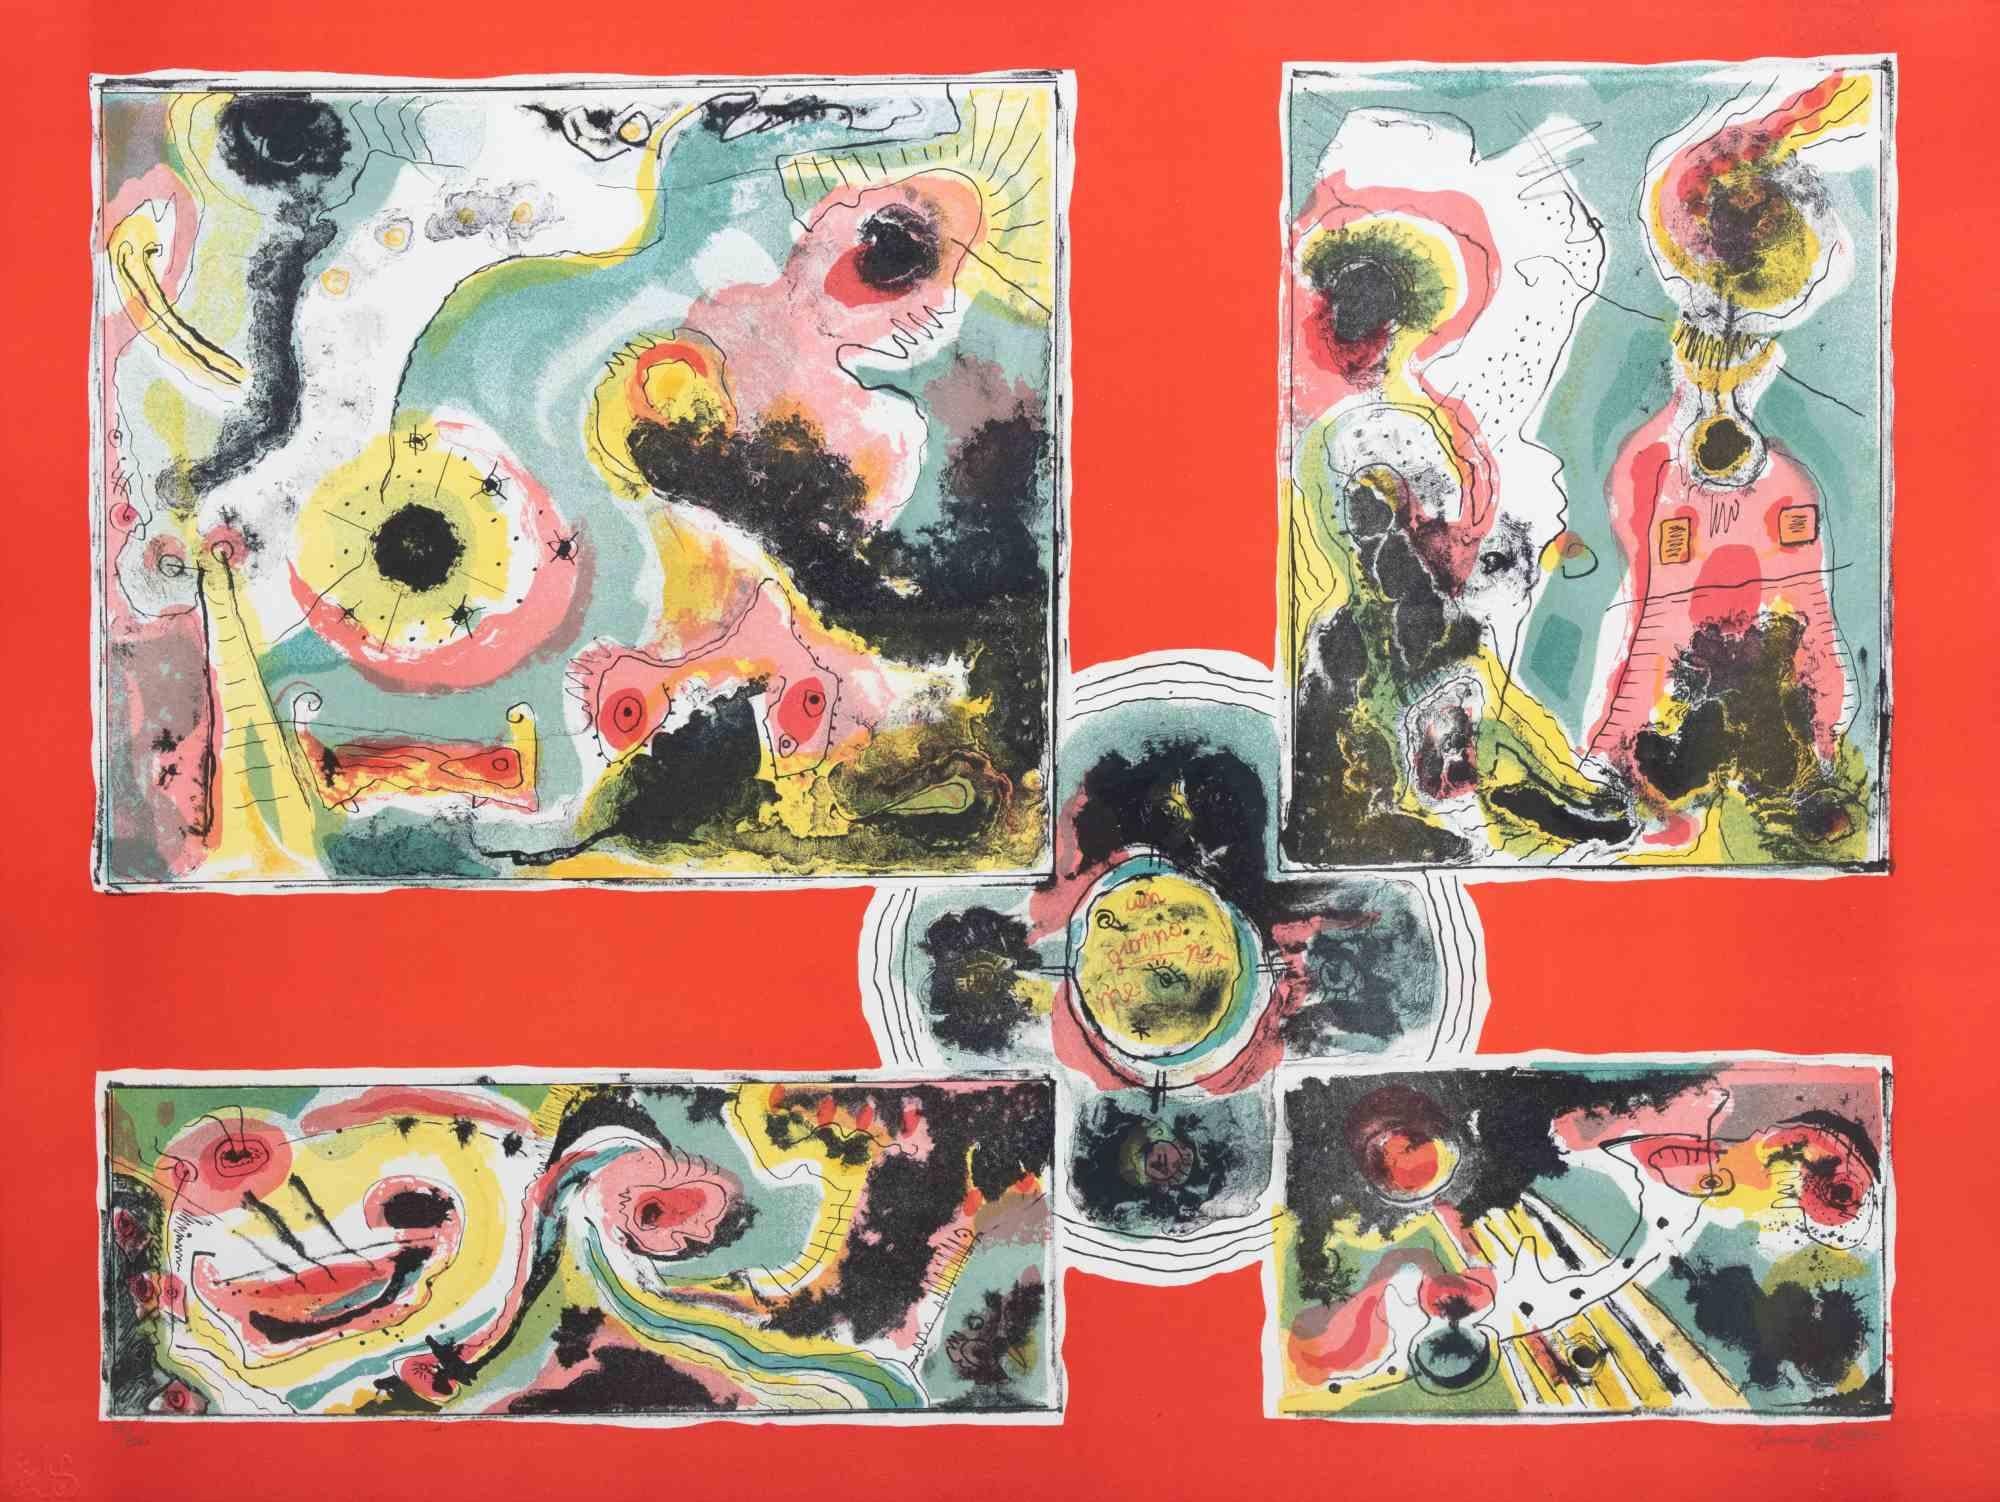 Red Abstract est une œuvre d'art contemporain réalisée par Le Pond dans les années 1970.

Lithographie en couleurs mélangées.

Signé à la main dans la marge inférieure.

Numéroté dans la marge inférieure.

Edition de 39/100